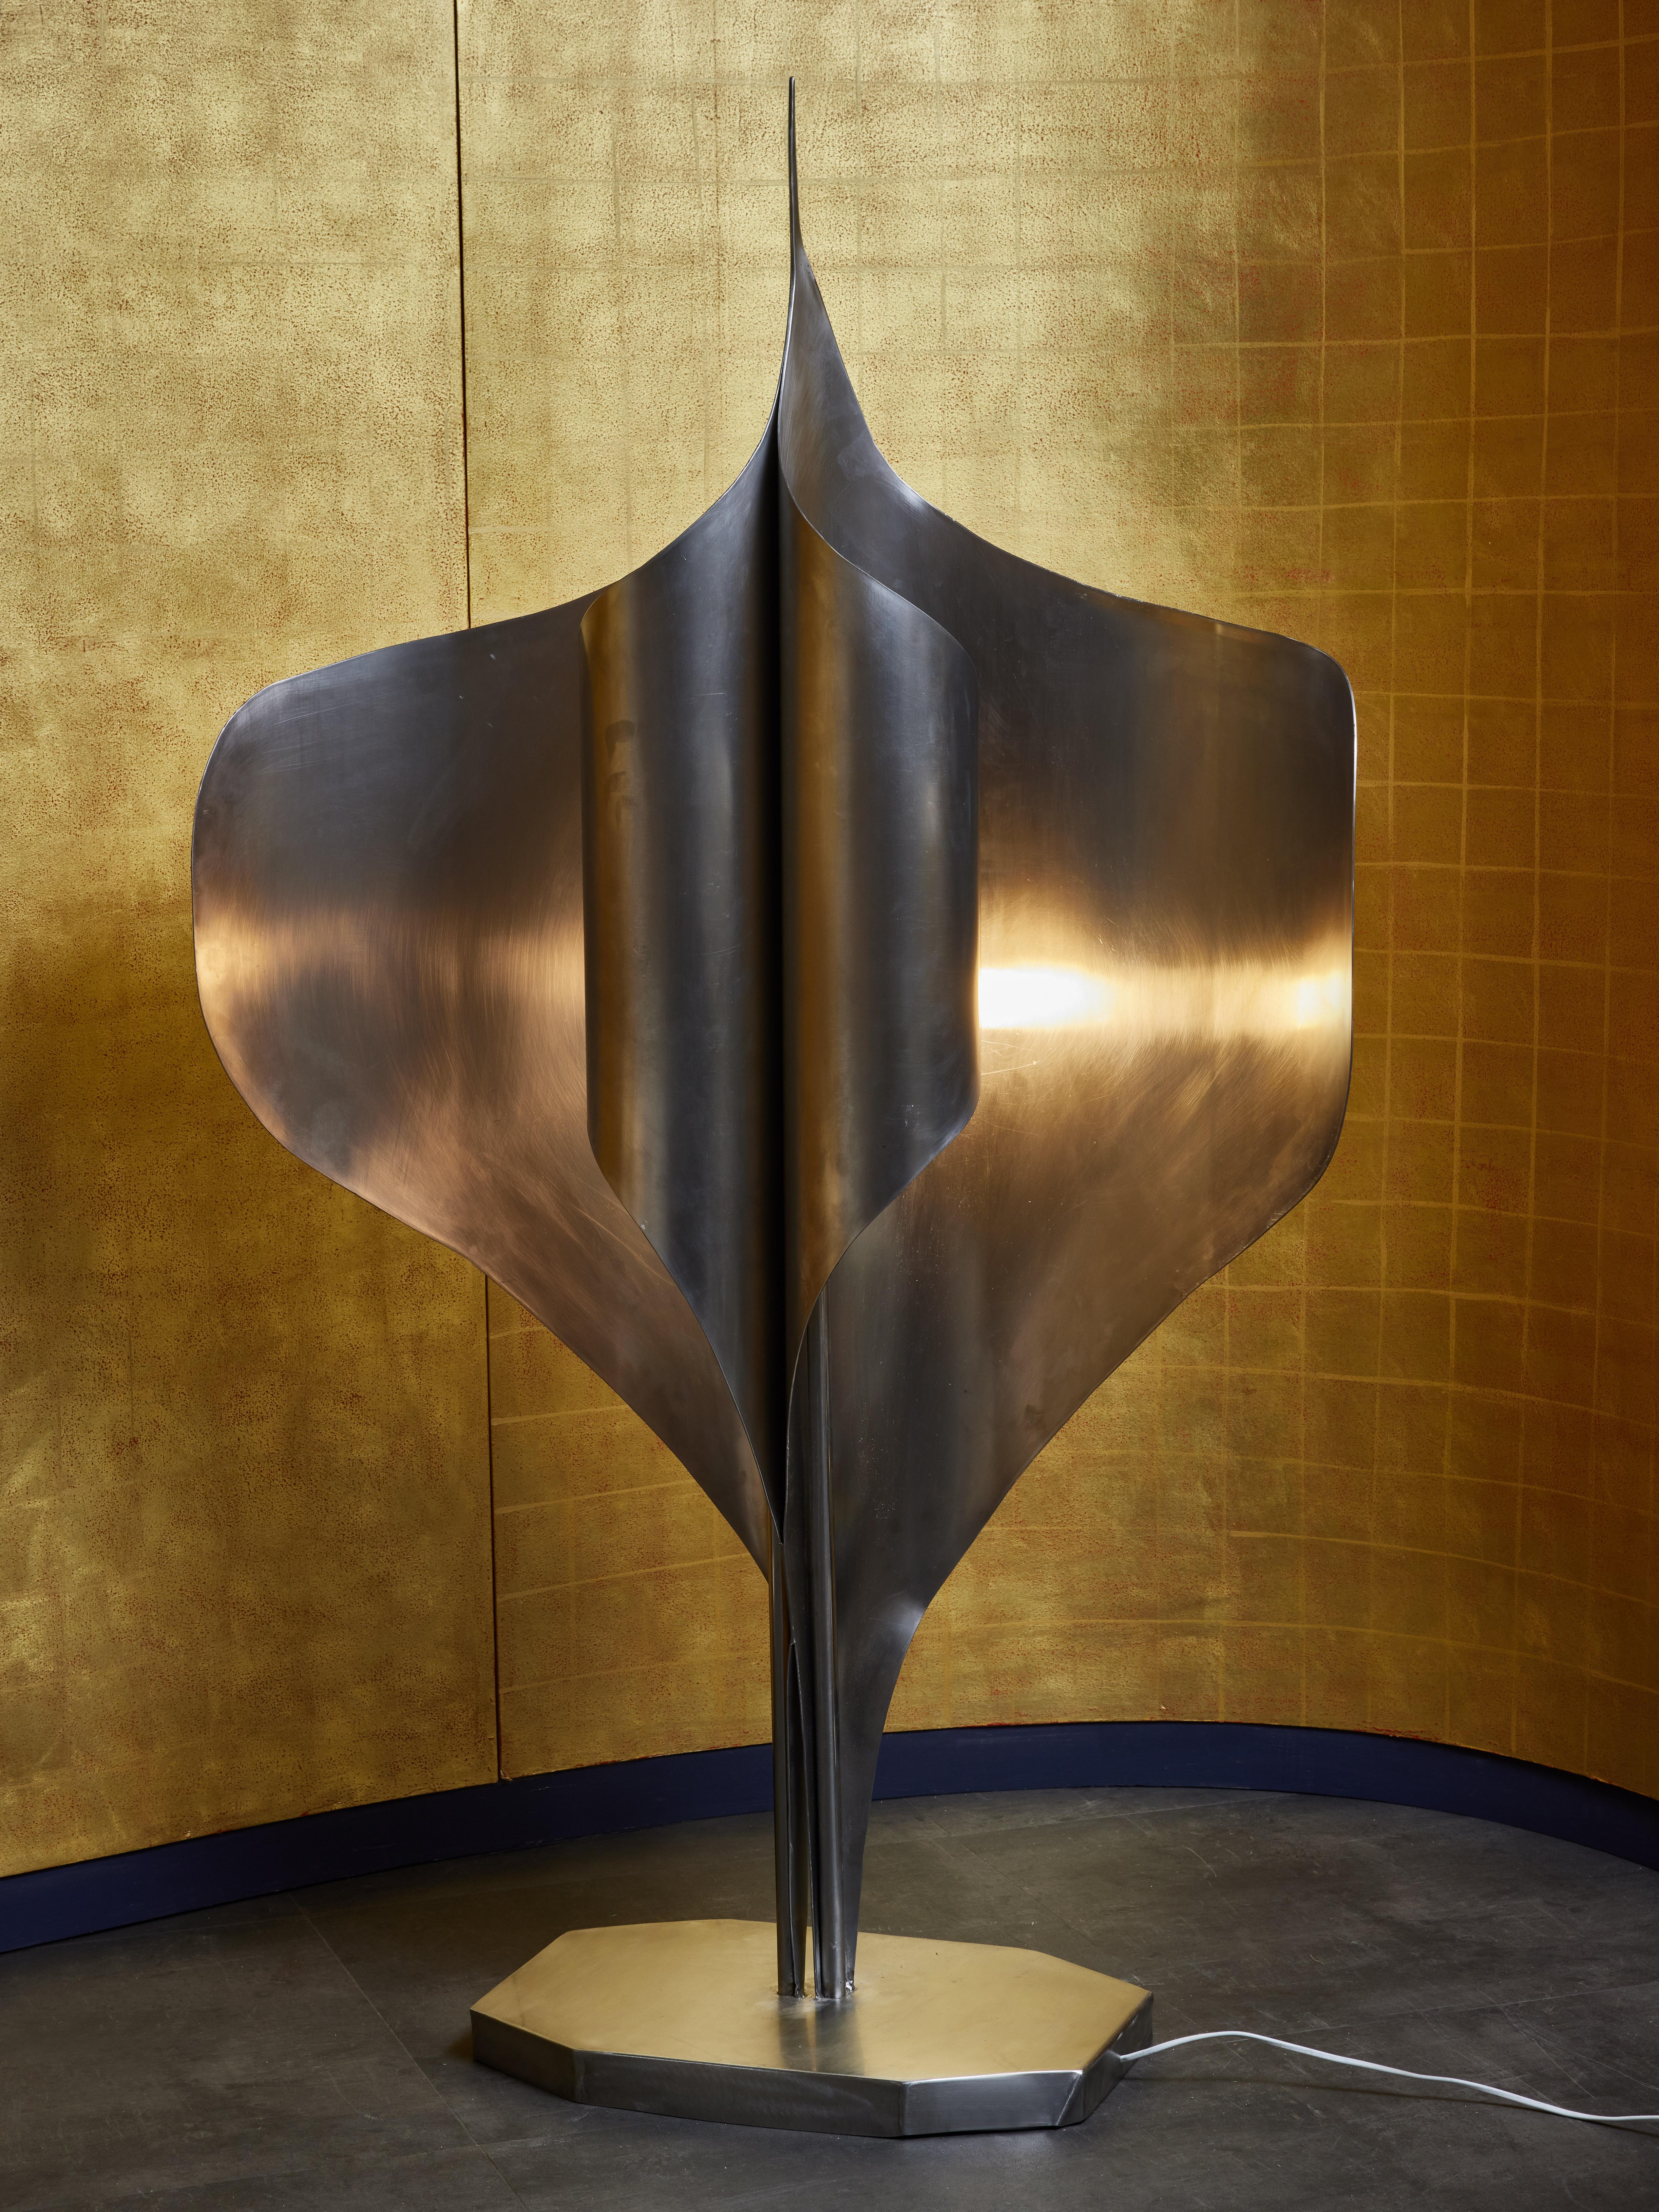 Lampadaire unique du sculpteur et artiste français Louis Durot.
Cette sculpture lumineuse est composée de deux feuilles d'acier symétriquement coupées et pliées.


Louis Durot
Né à Paris en 1939, Louis Durot est un ingénieur chimiste mondialement